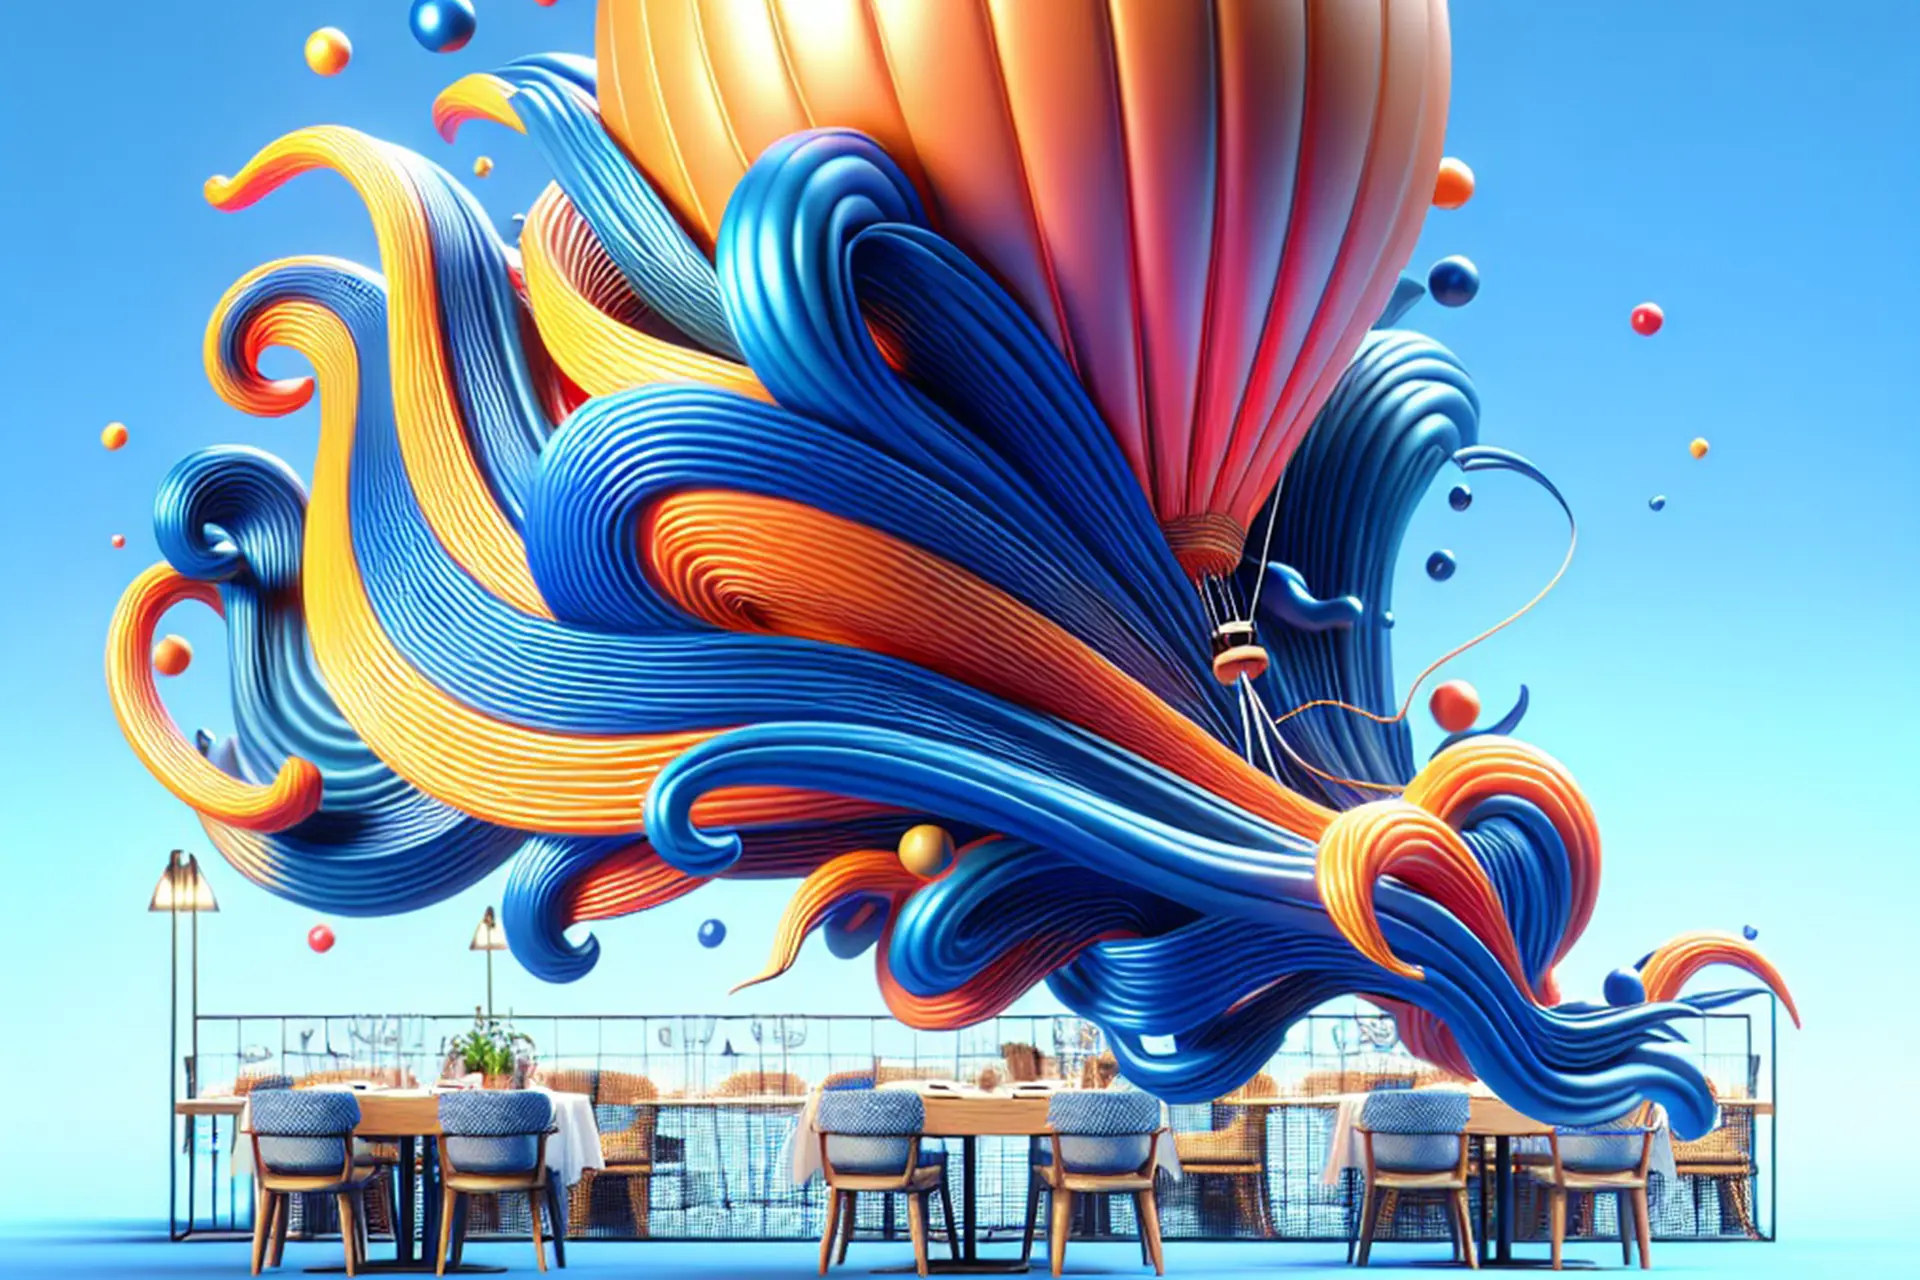 Bàn ăn hiện đại với trang trí bong bóng nghệ thuật và những con sóng đầy màu sắc